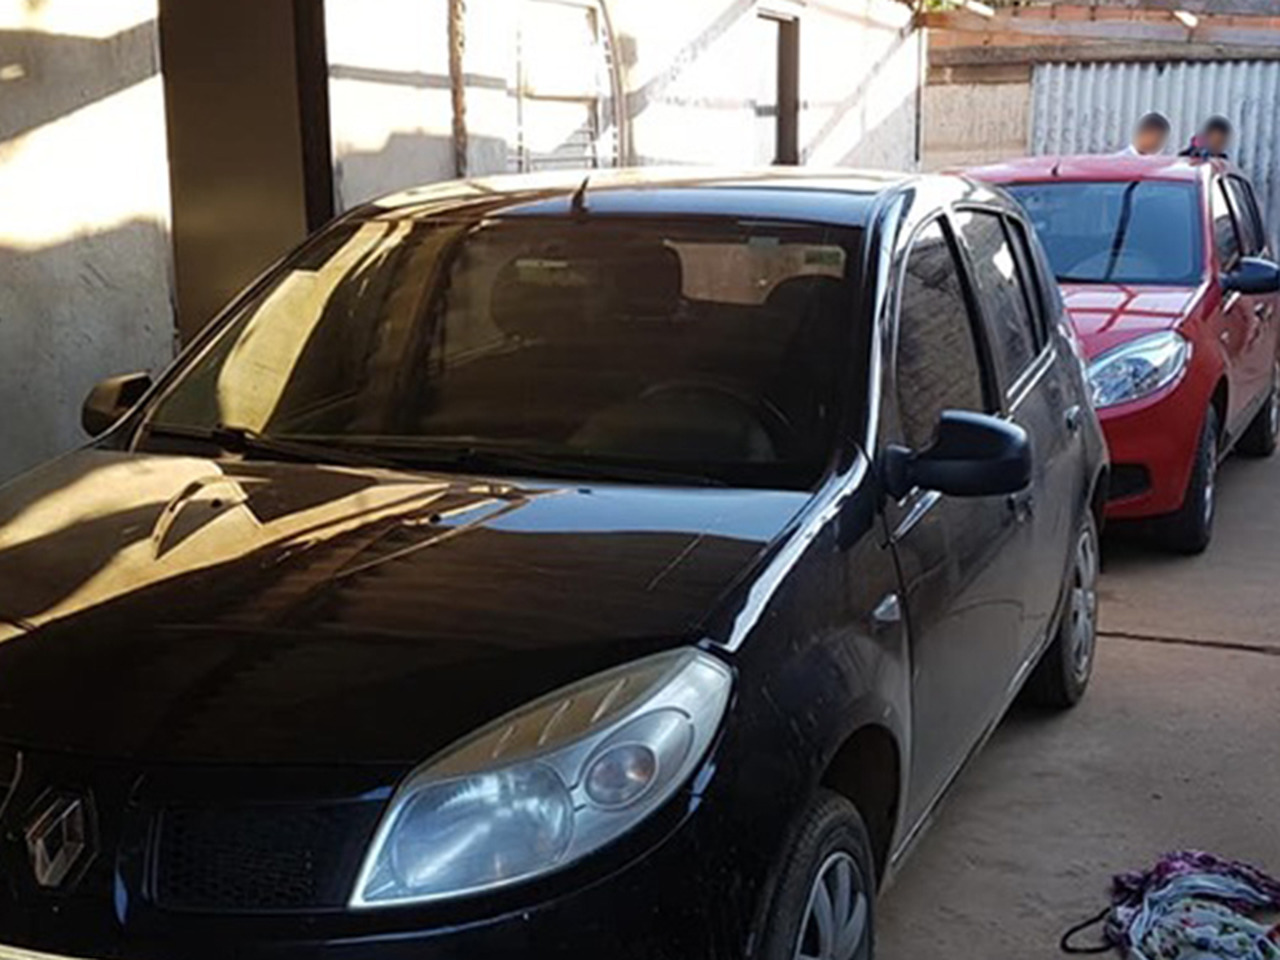 Veículos roubados de motoristas de app, do modelo Renault Sandero, estavam em uma residência no Jardim Miramar | Foto: Divulgação / 8º BPM